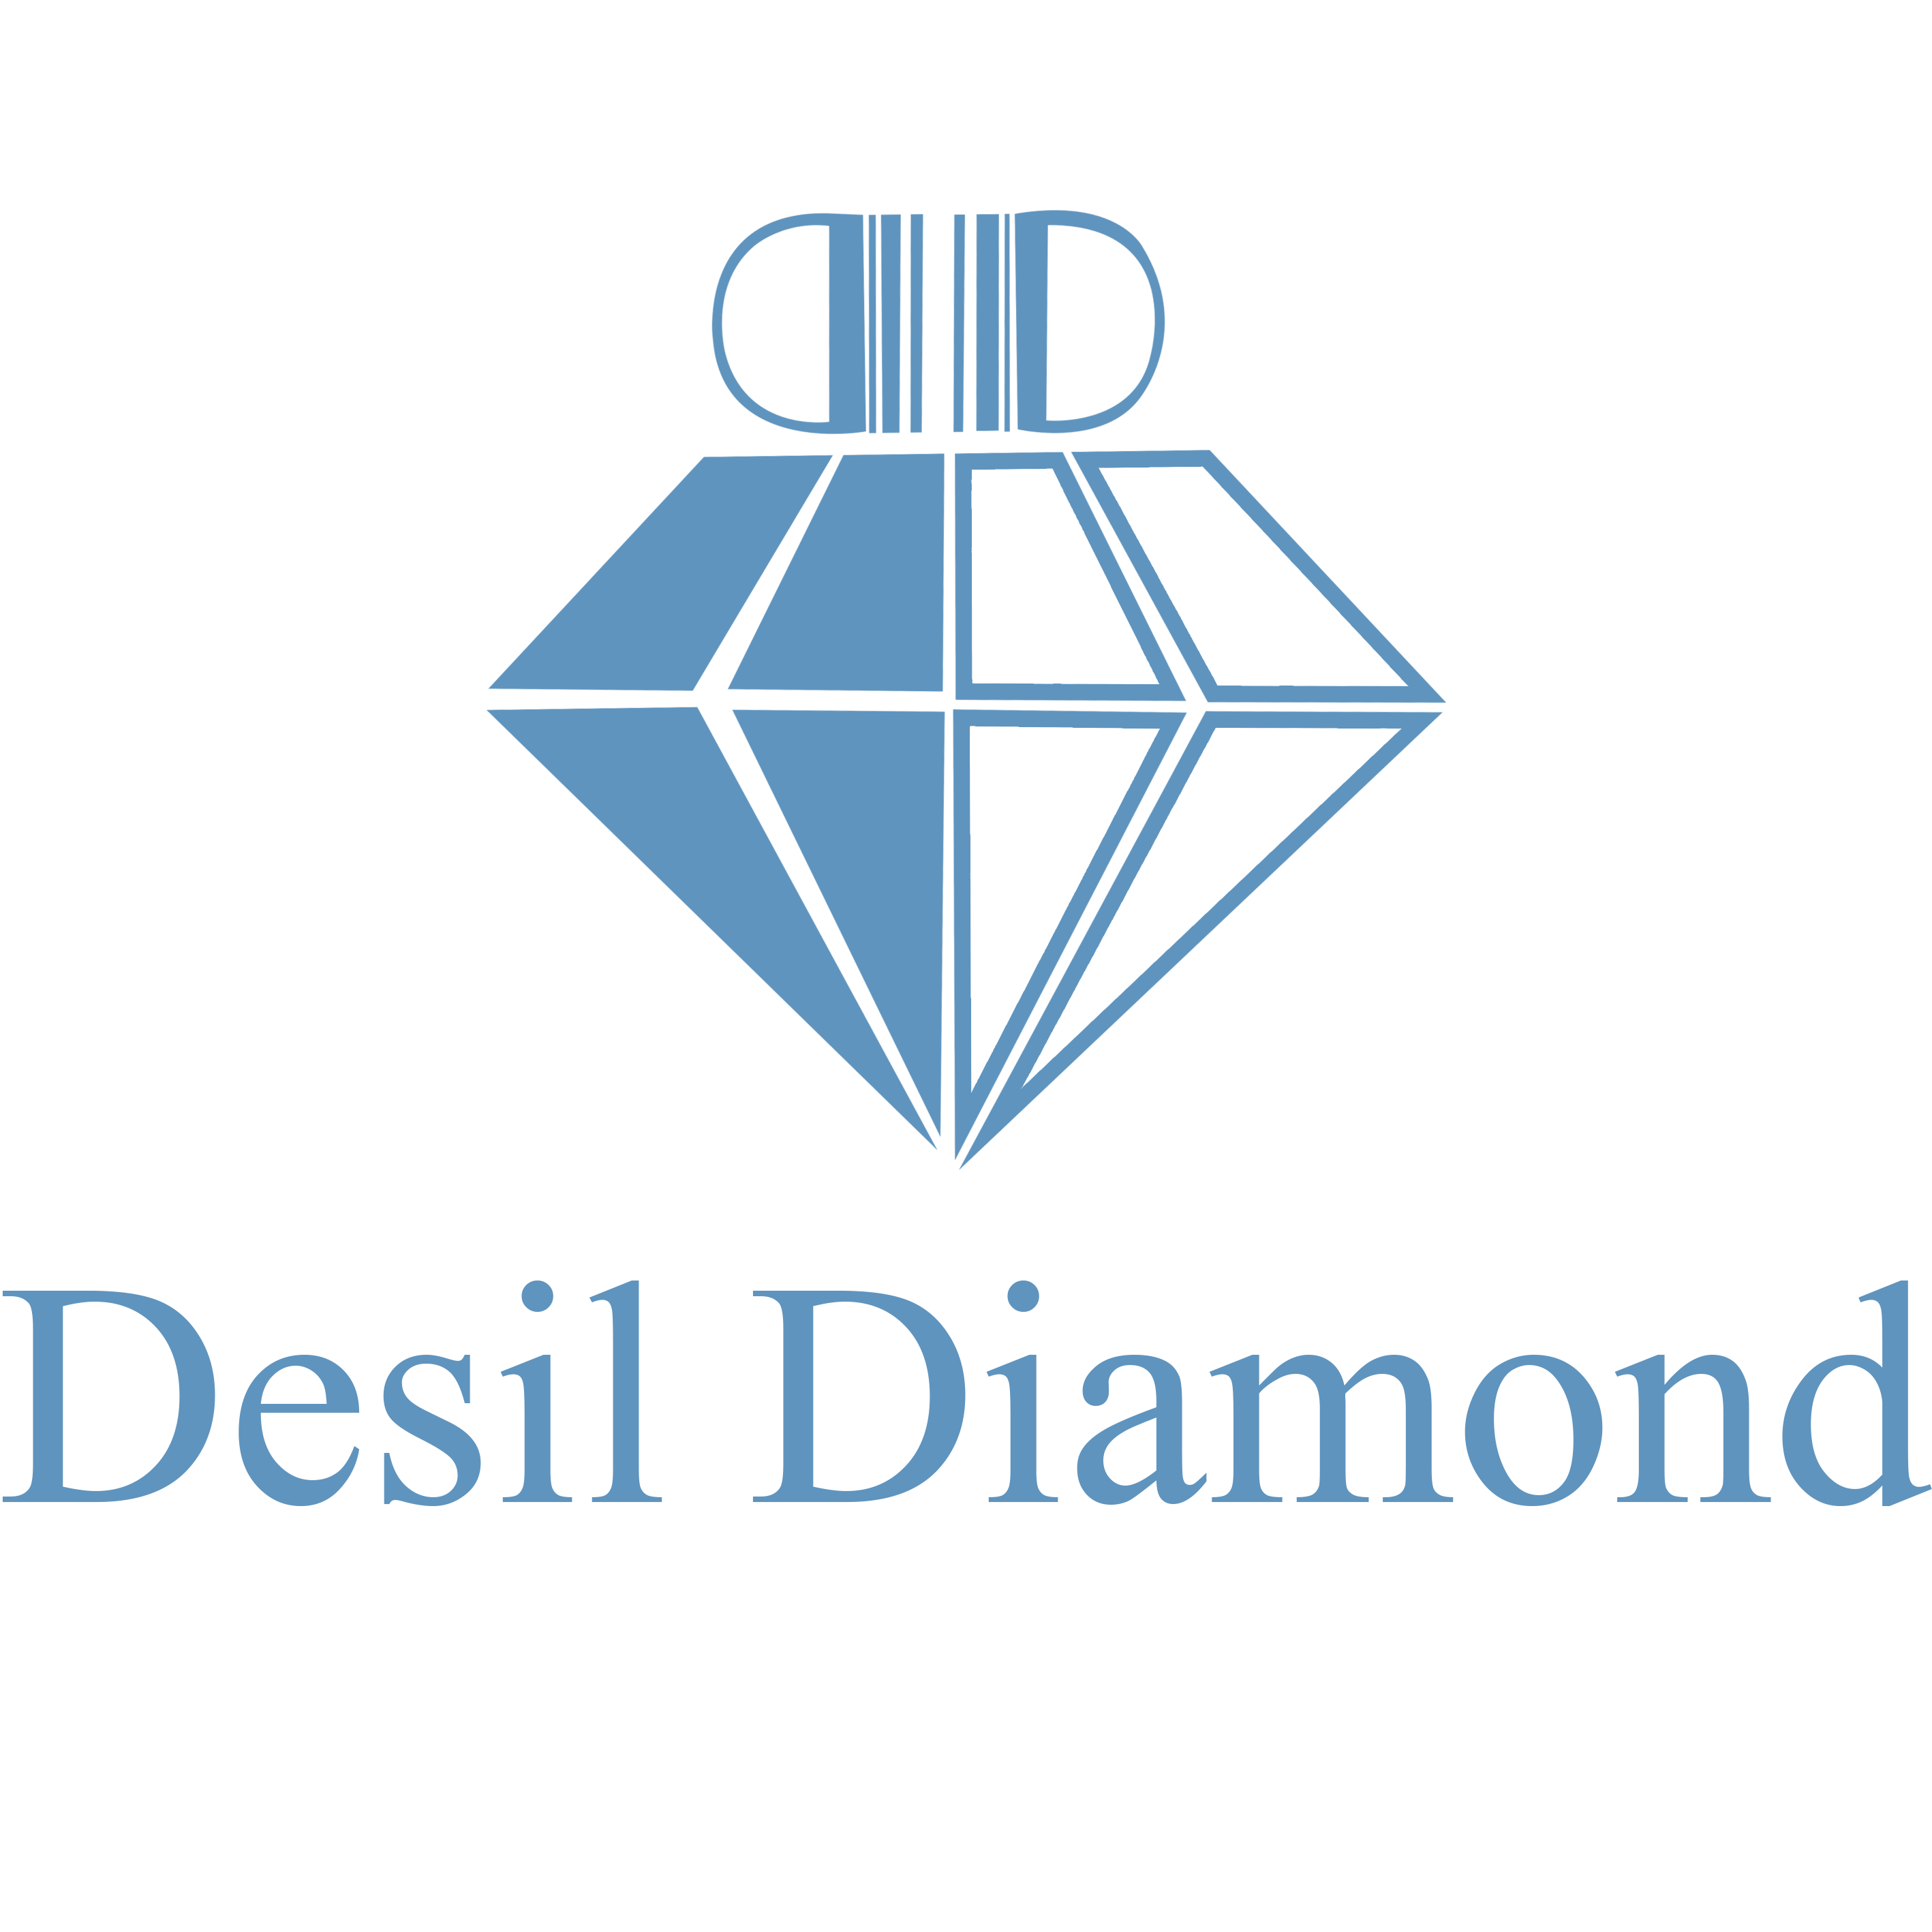 Desil Diamond